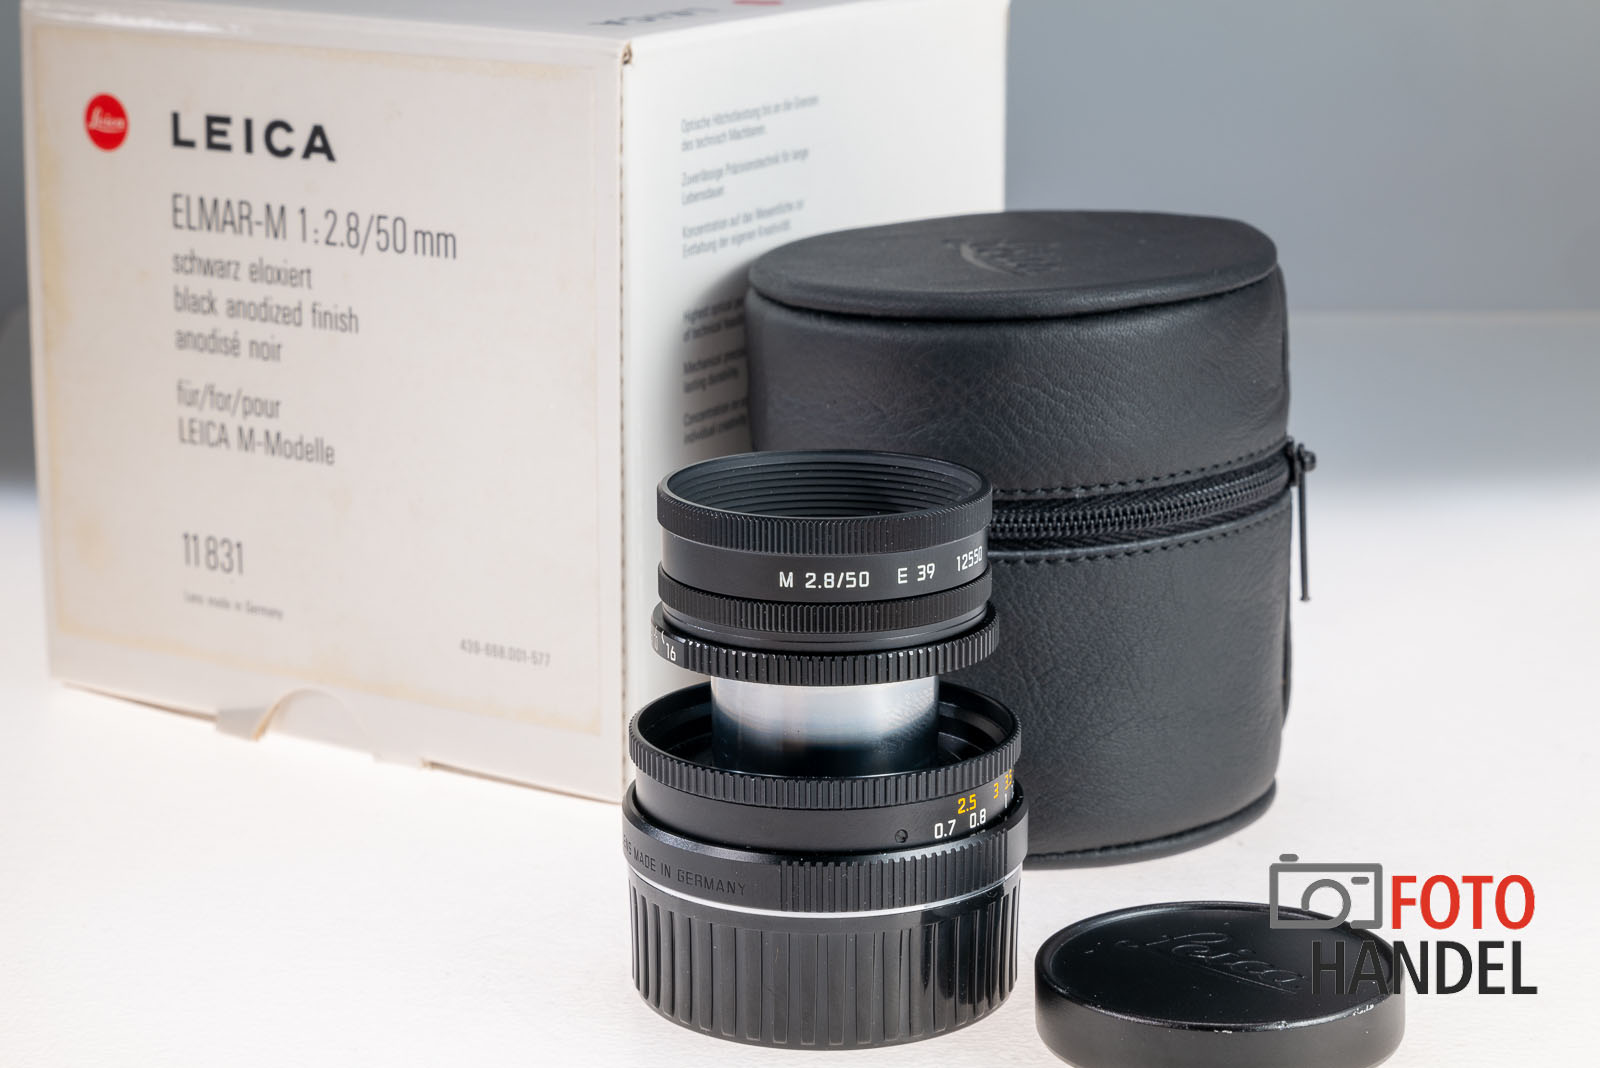 Leica Elmar-M 50mm 2.8 schwarz eloxiert - 11831